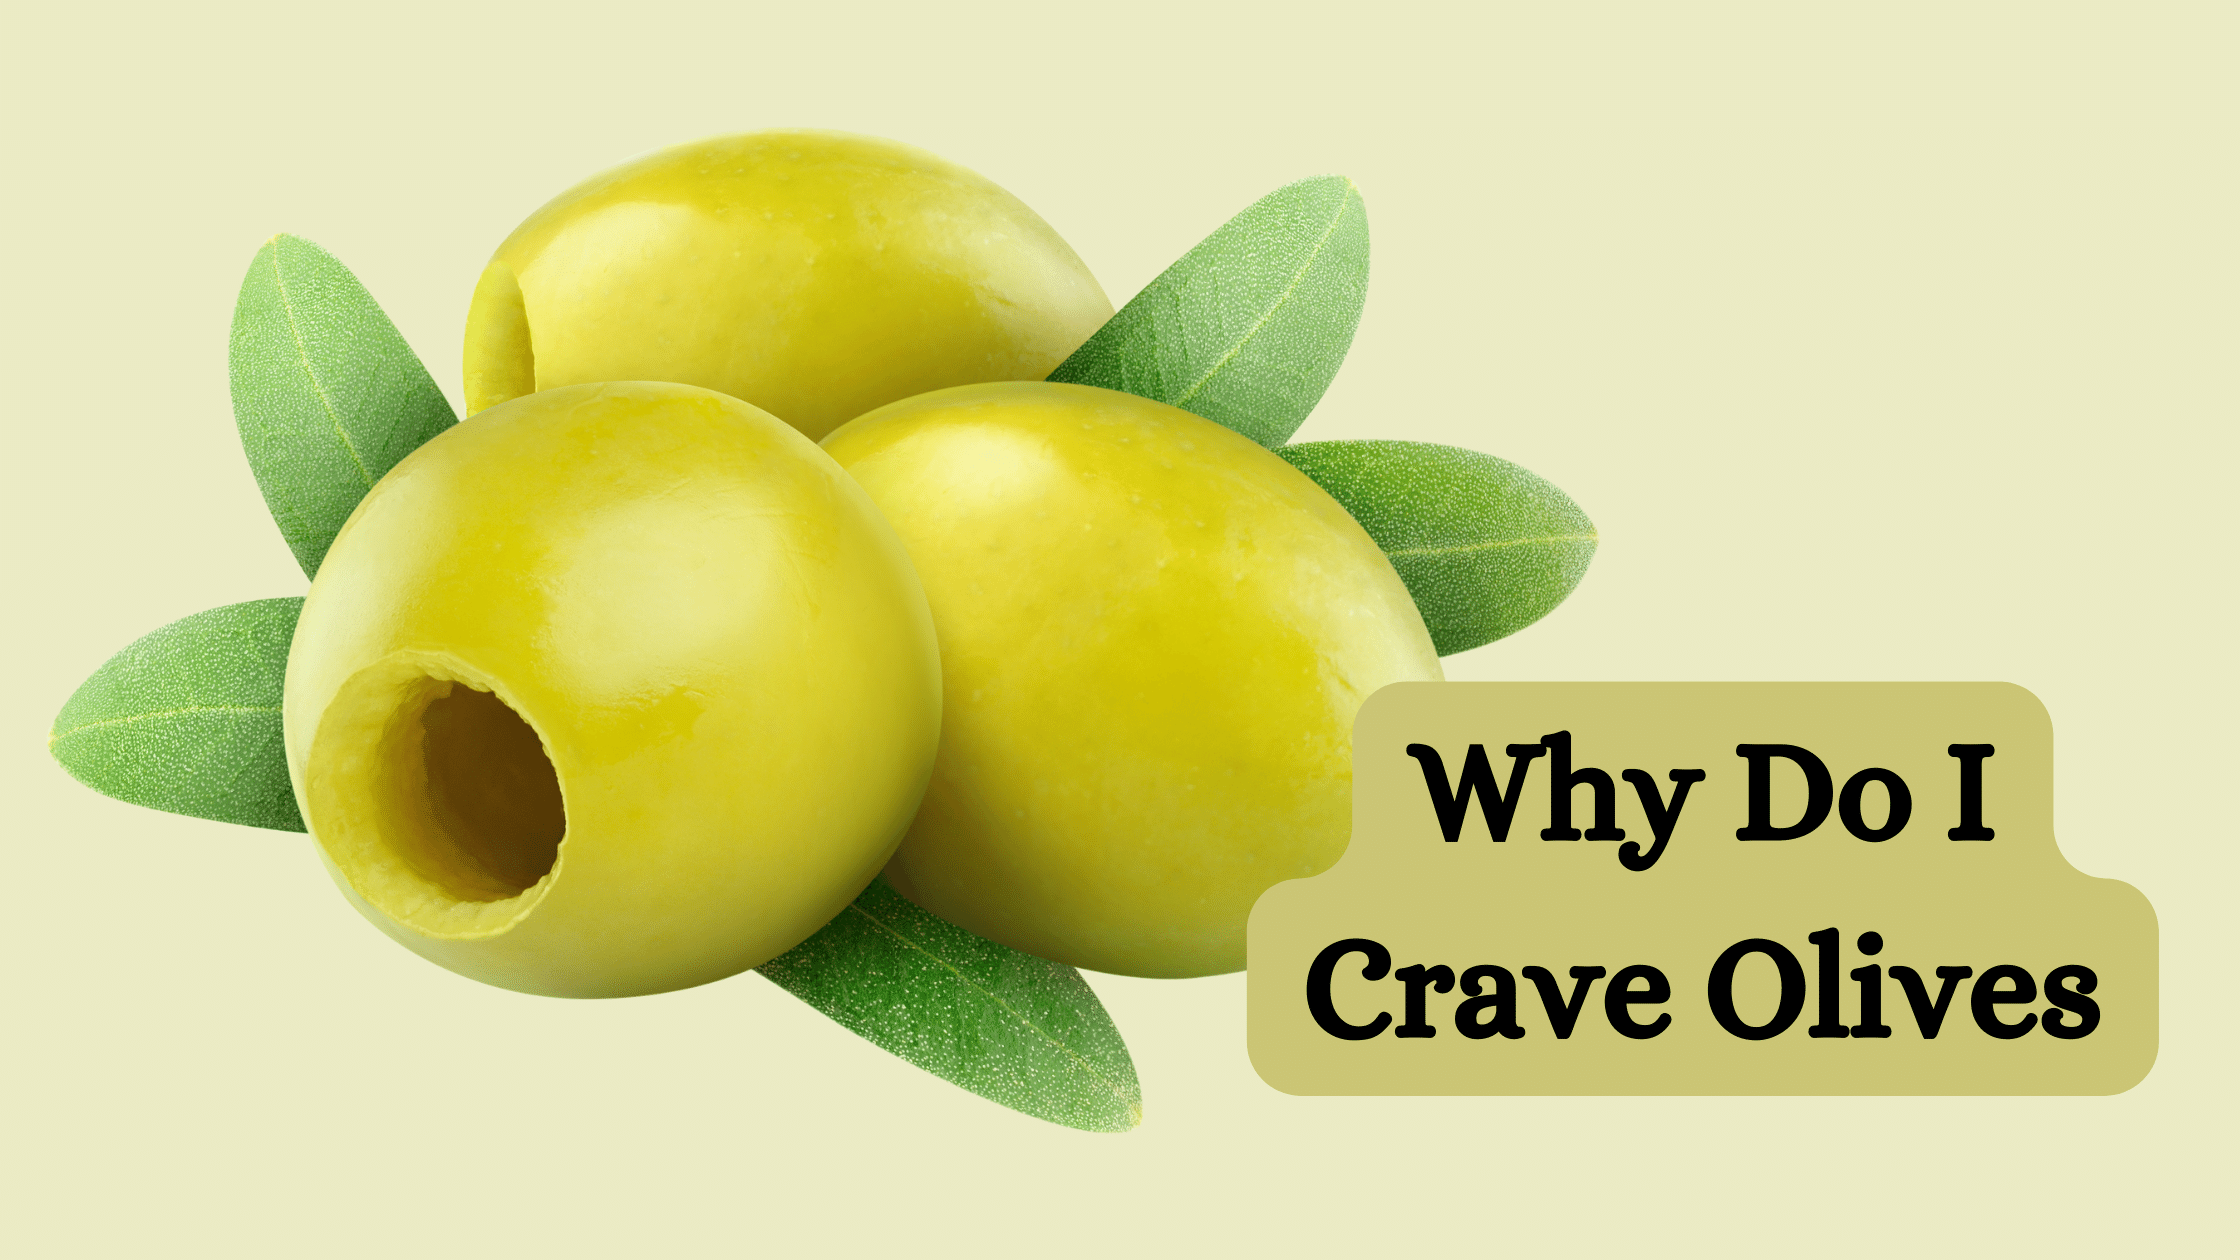 Crave Olives